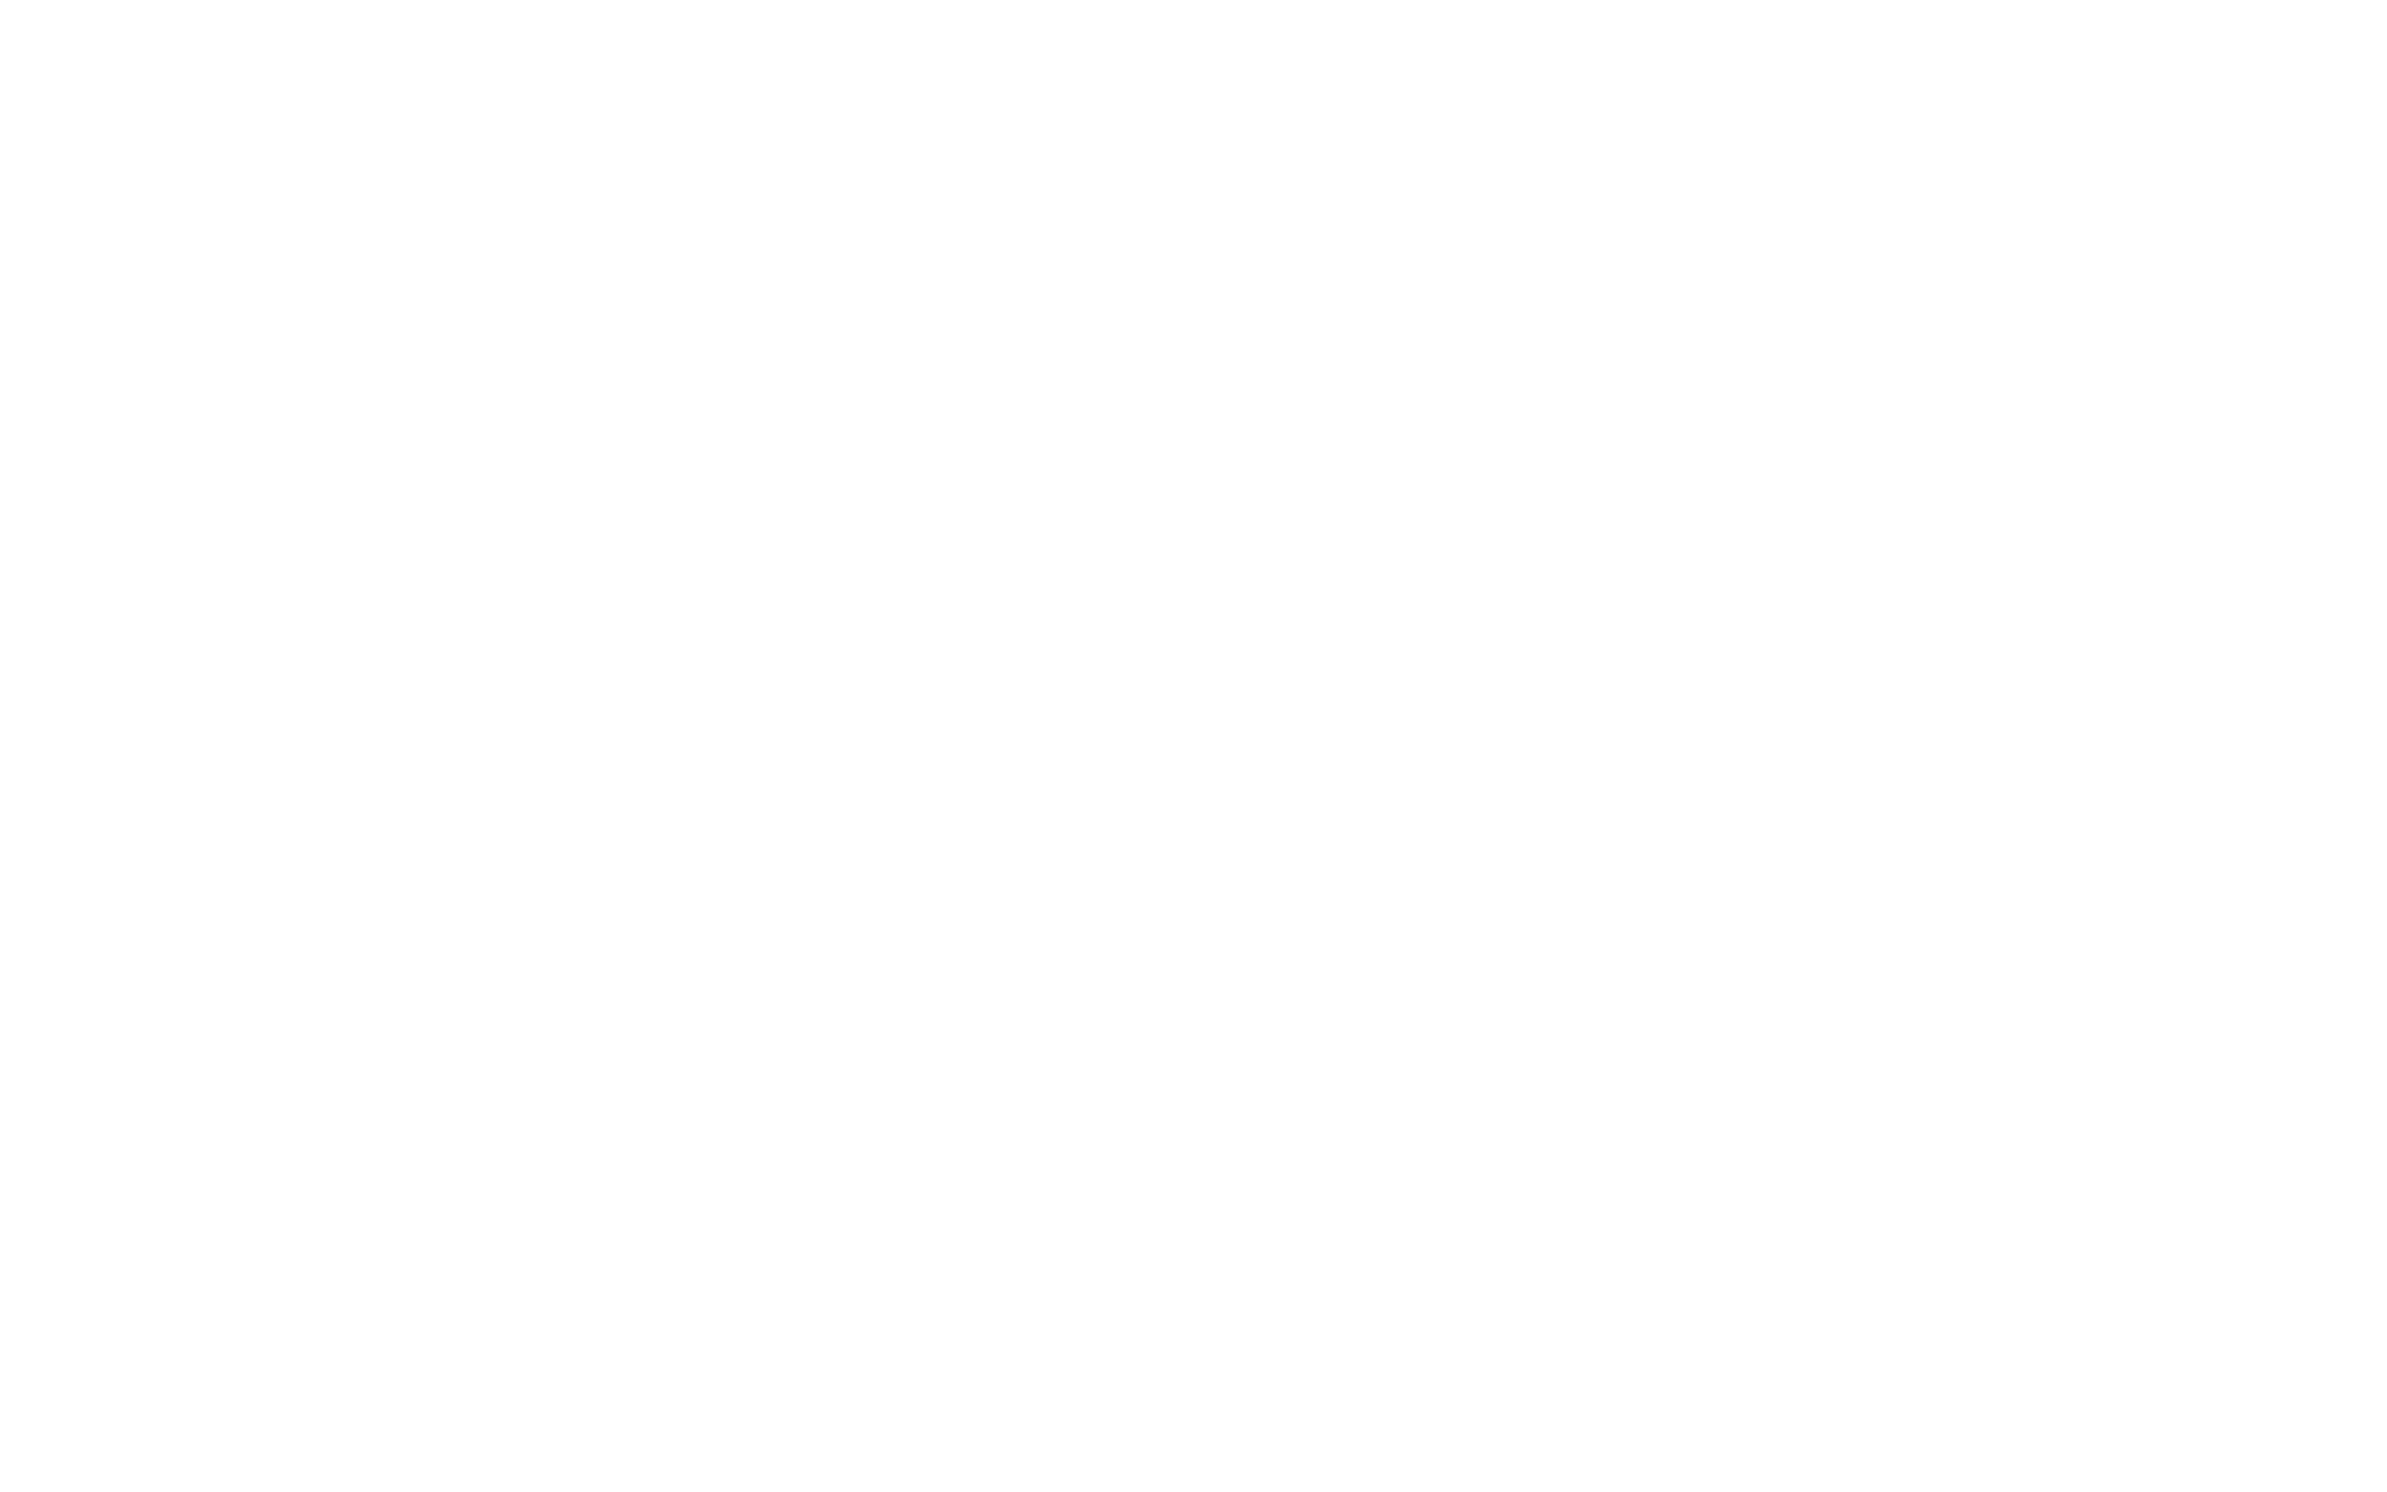 LOGO - LA FINA-02